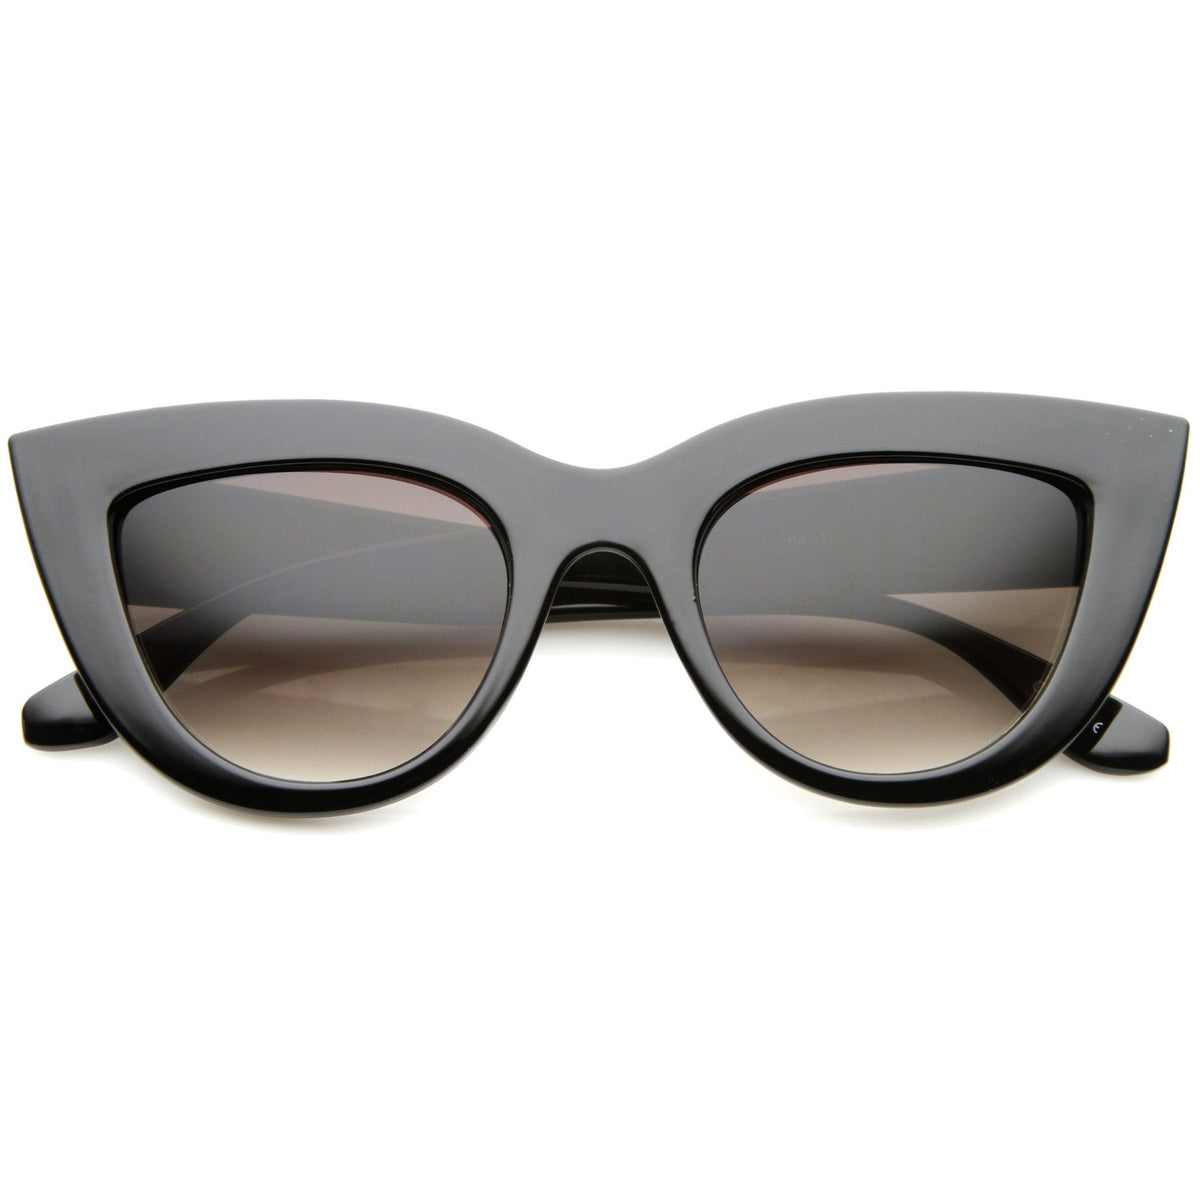 Women's 70's Retro Sharp Cat Eye Sunglasses - zeroUV